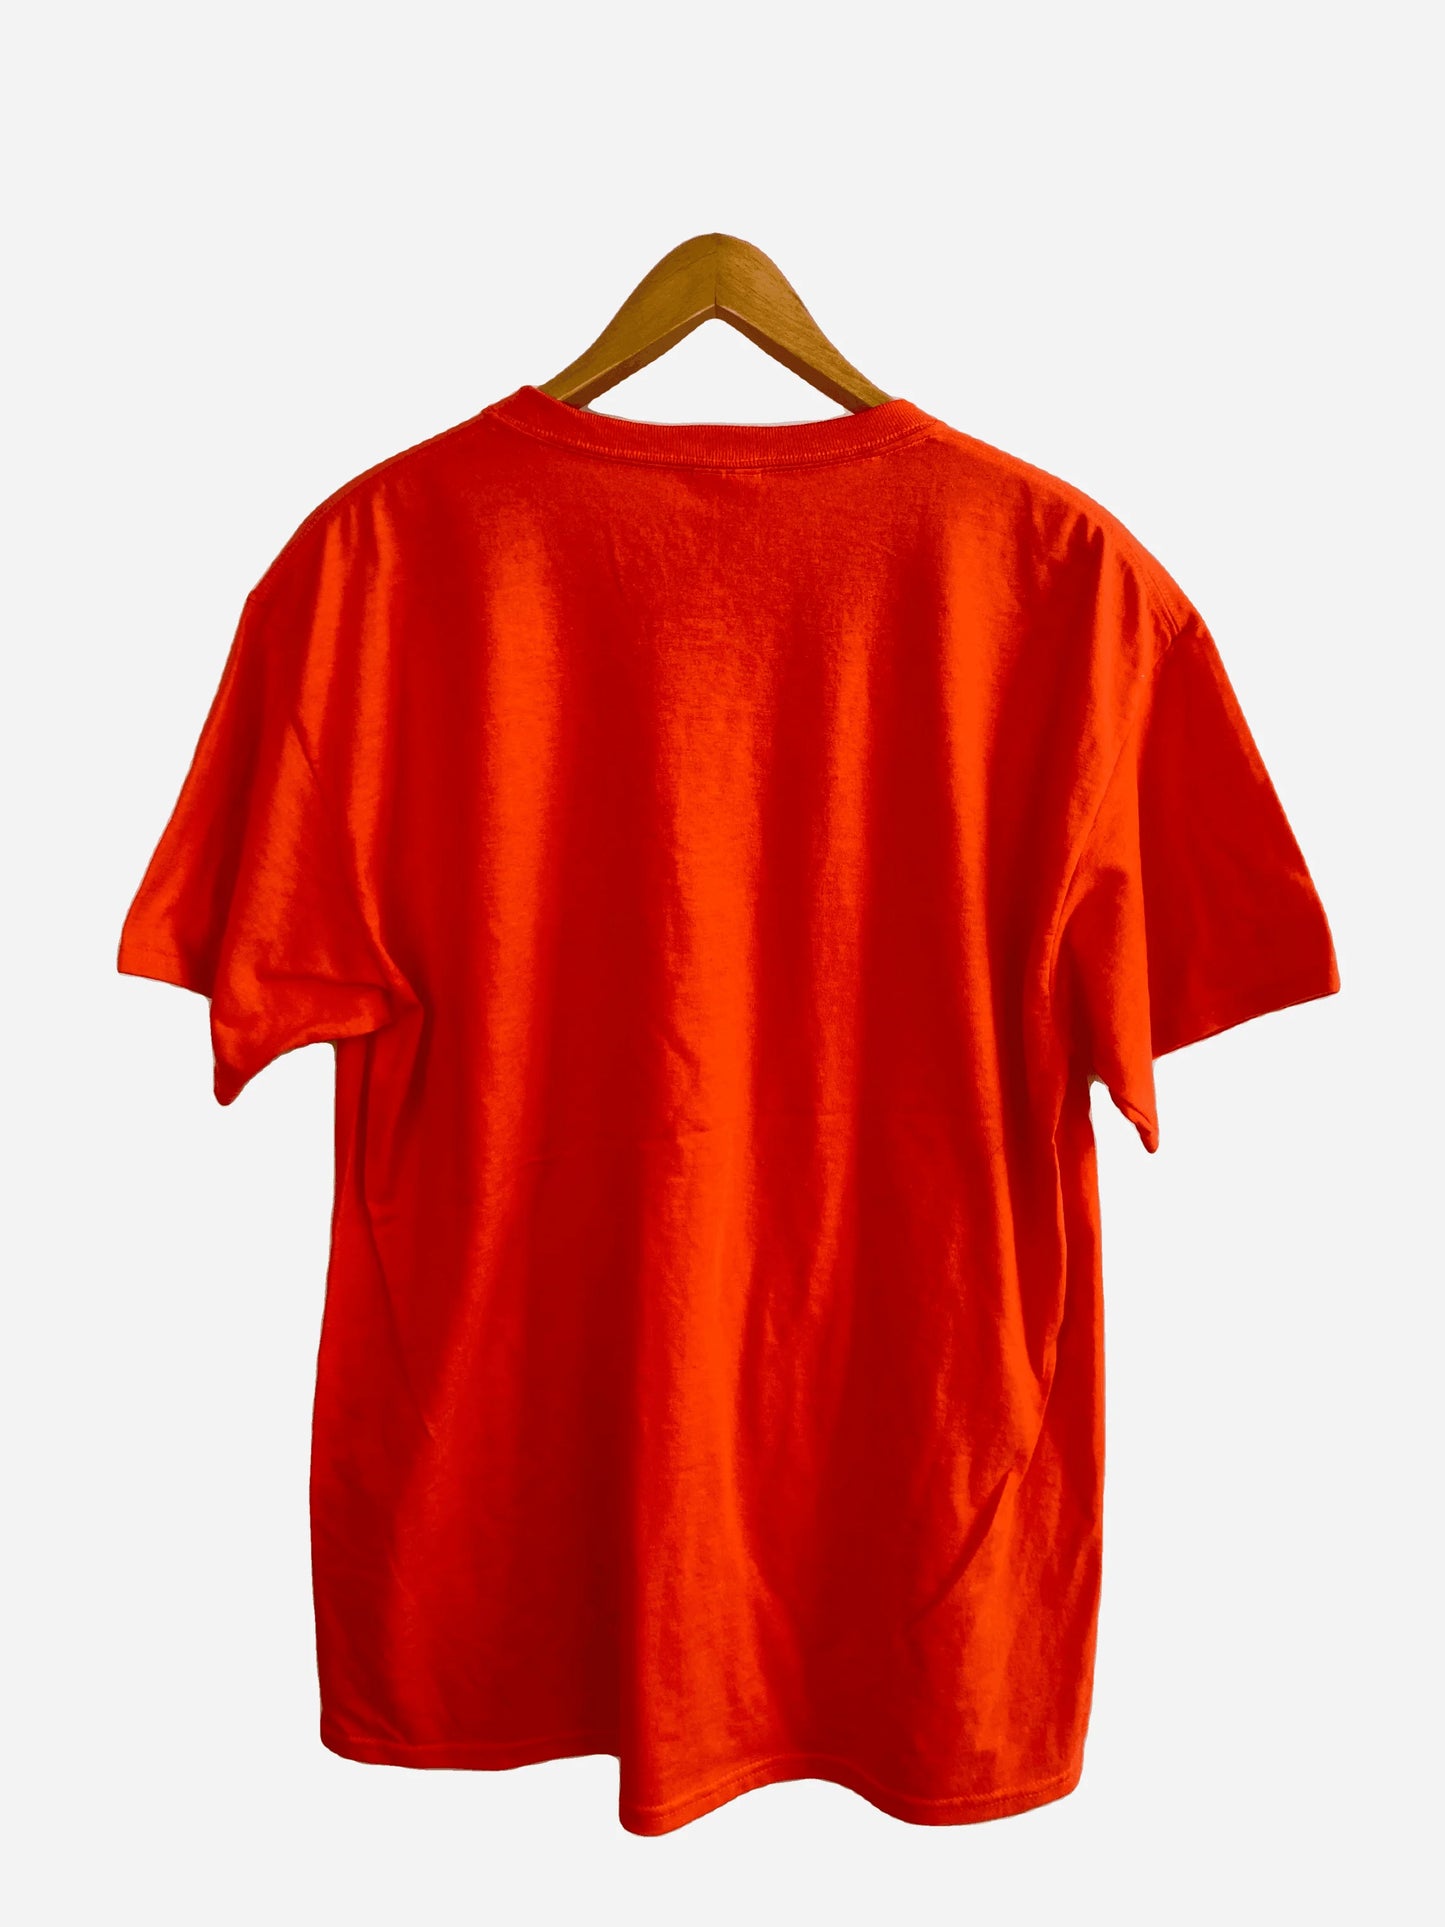 „Olympics Clifton“ T-Shirt (L)